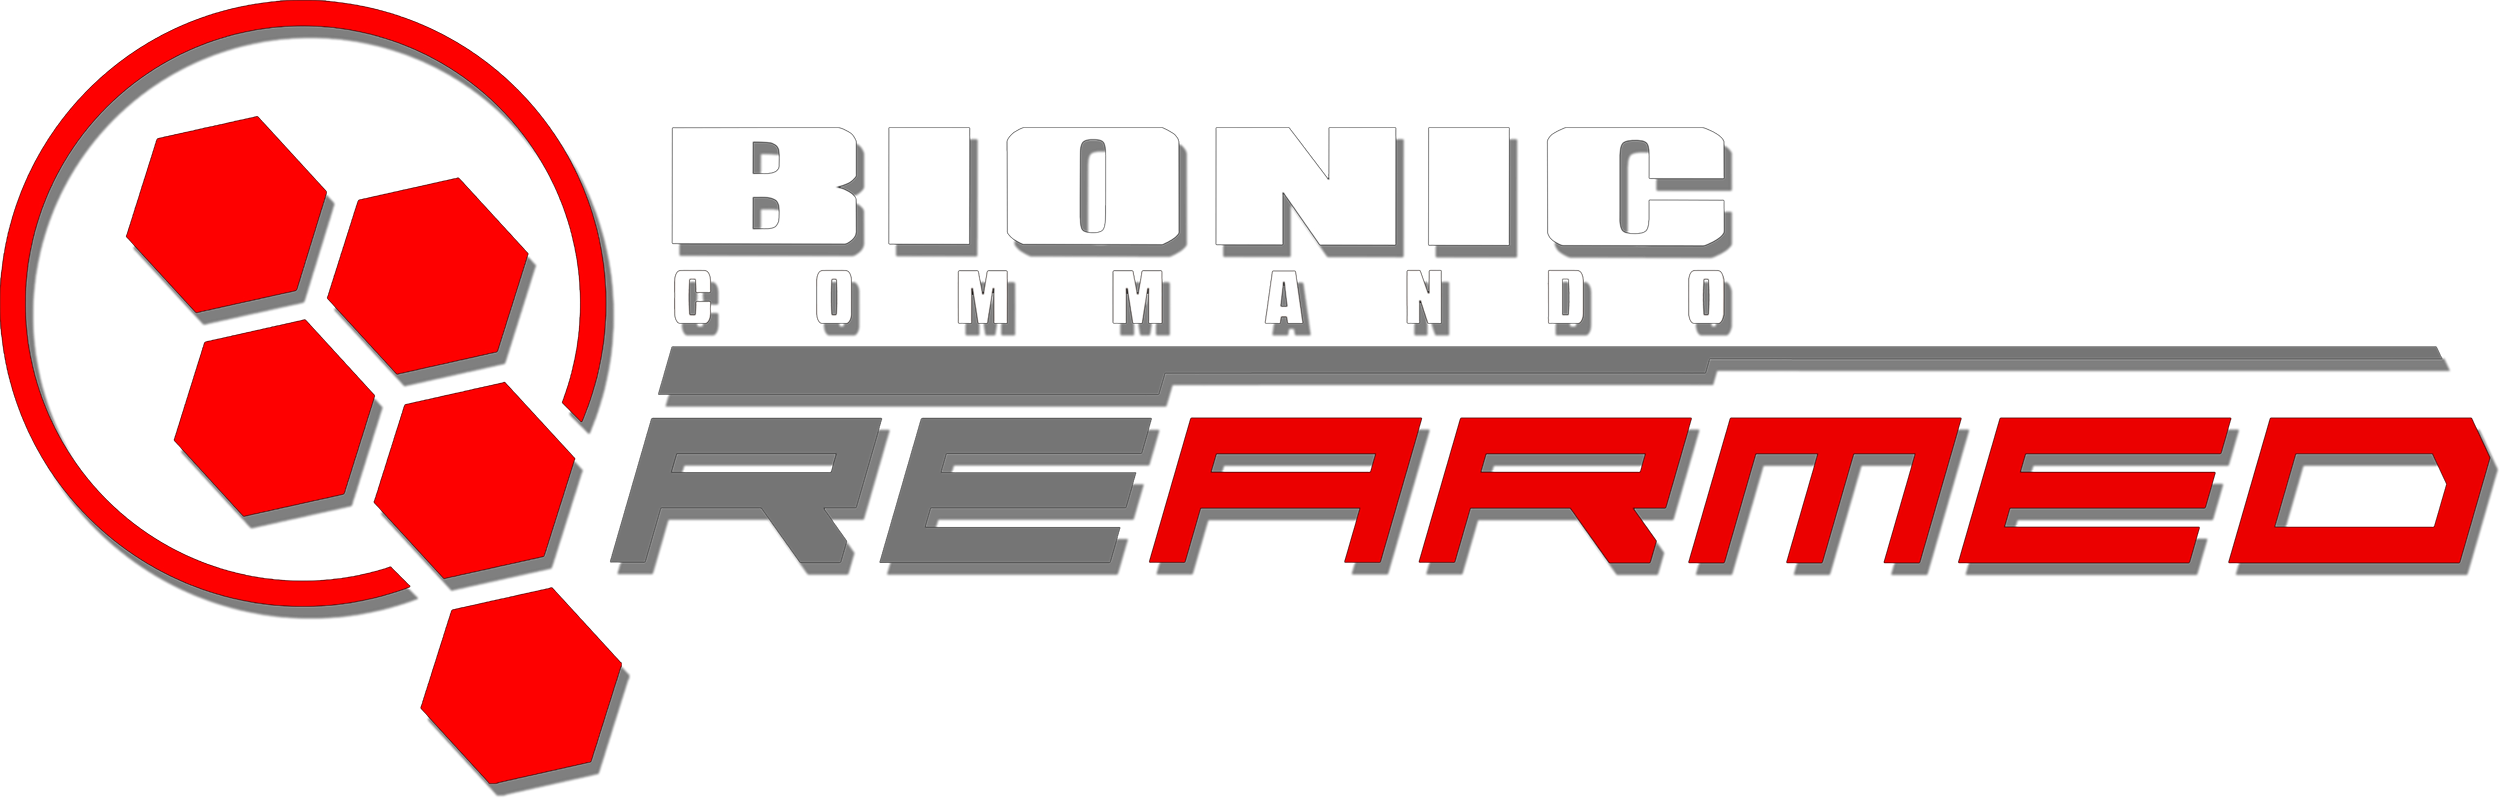 download bionic rearmed